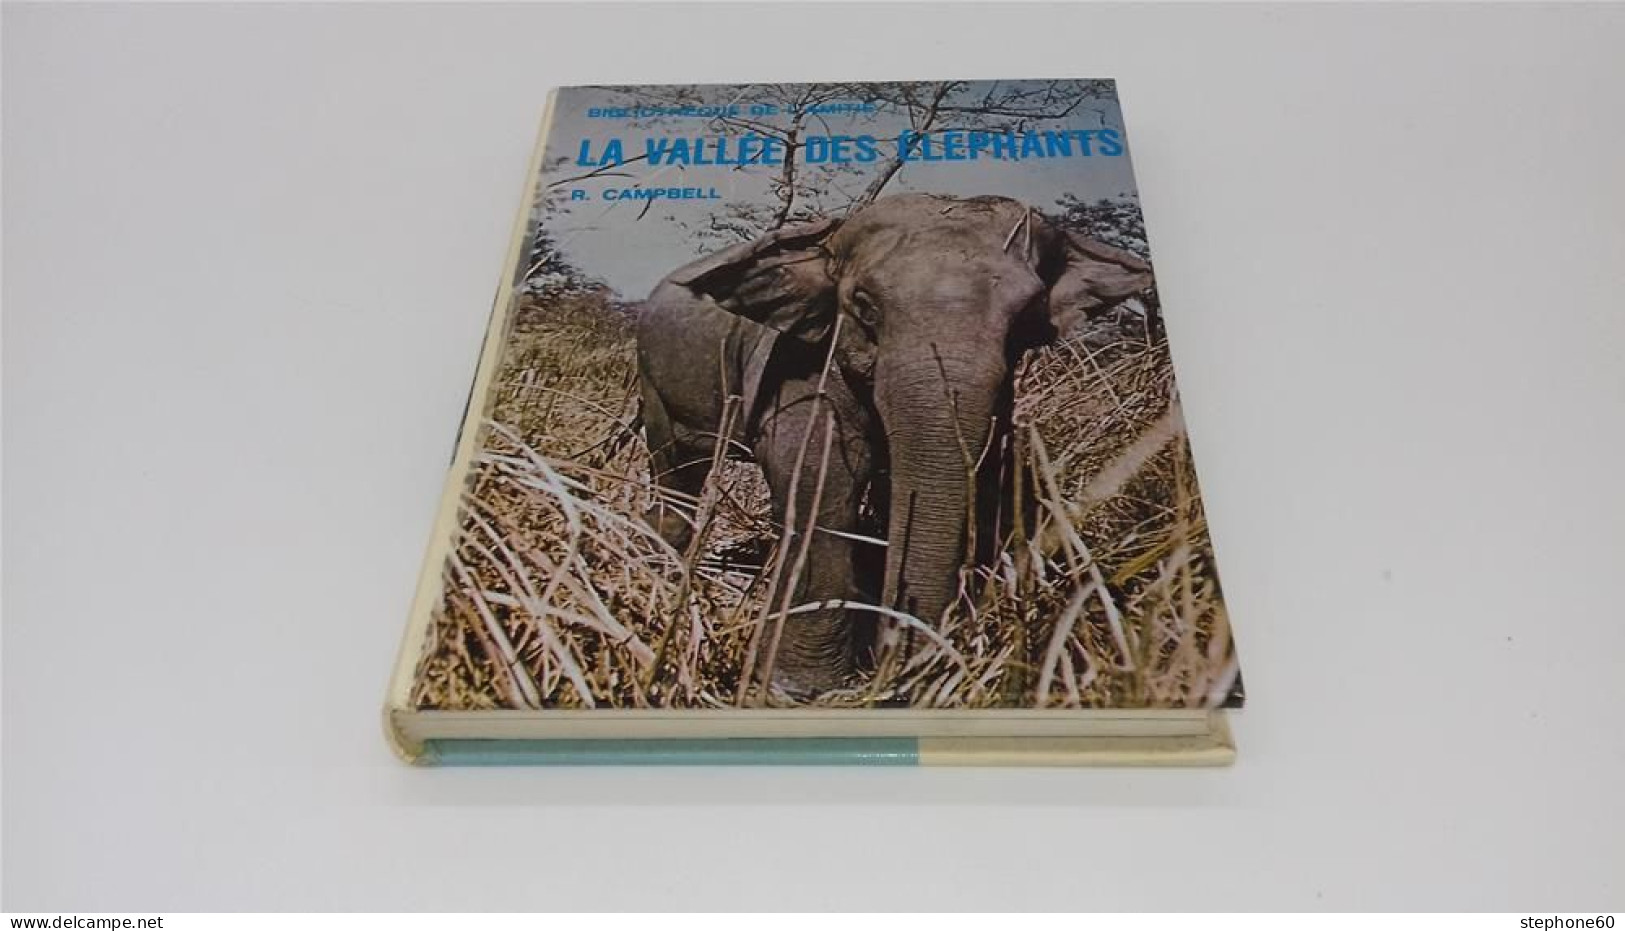 999 - (689) La Vallée Des Elephants - R. CAMPBELL - 1960 - Bibliotheque De L'amitié - Bibliotheque De L'Amitie